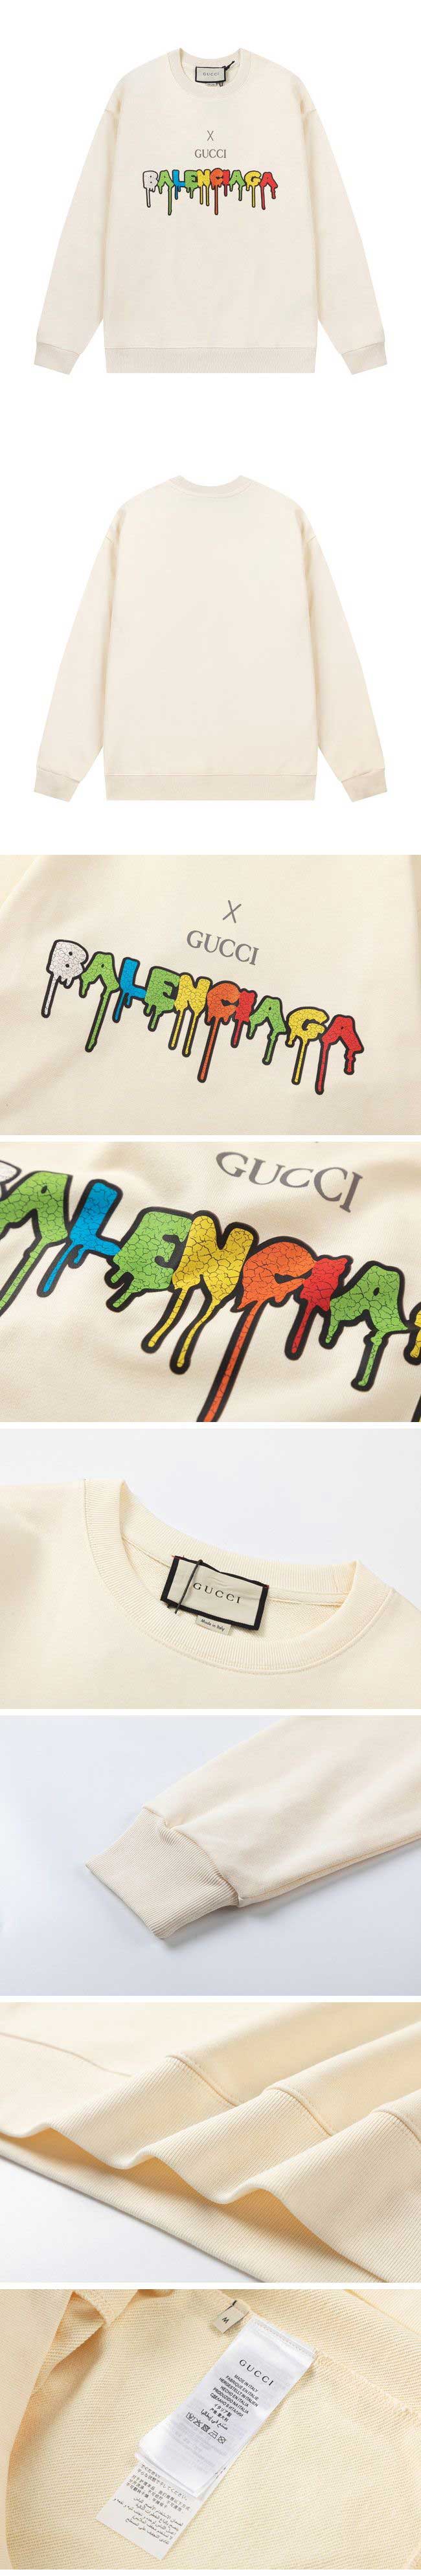 Gucci x Balenciaga Paint Logo Sweat グッチ x バレンシアガ ペイント ロゴ スウェット ホワイト